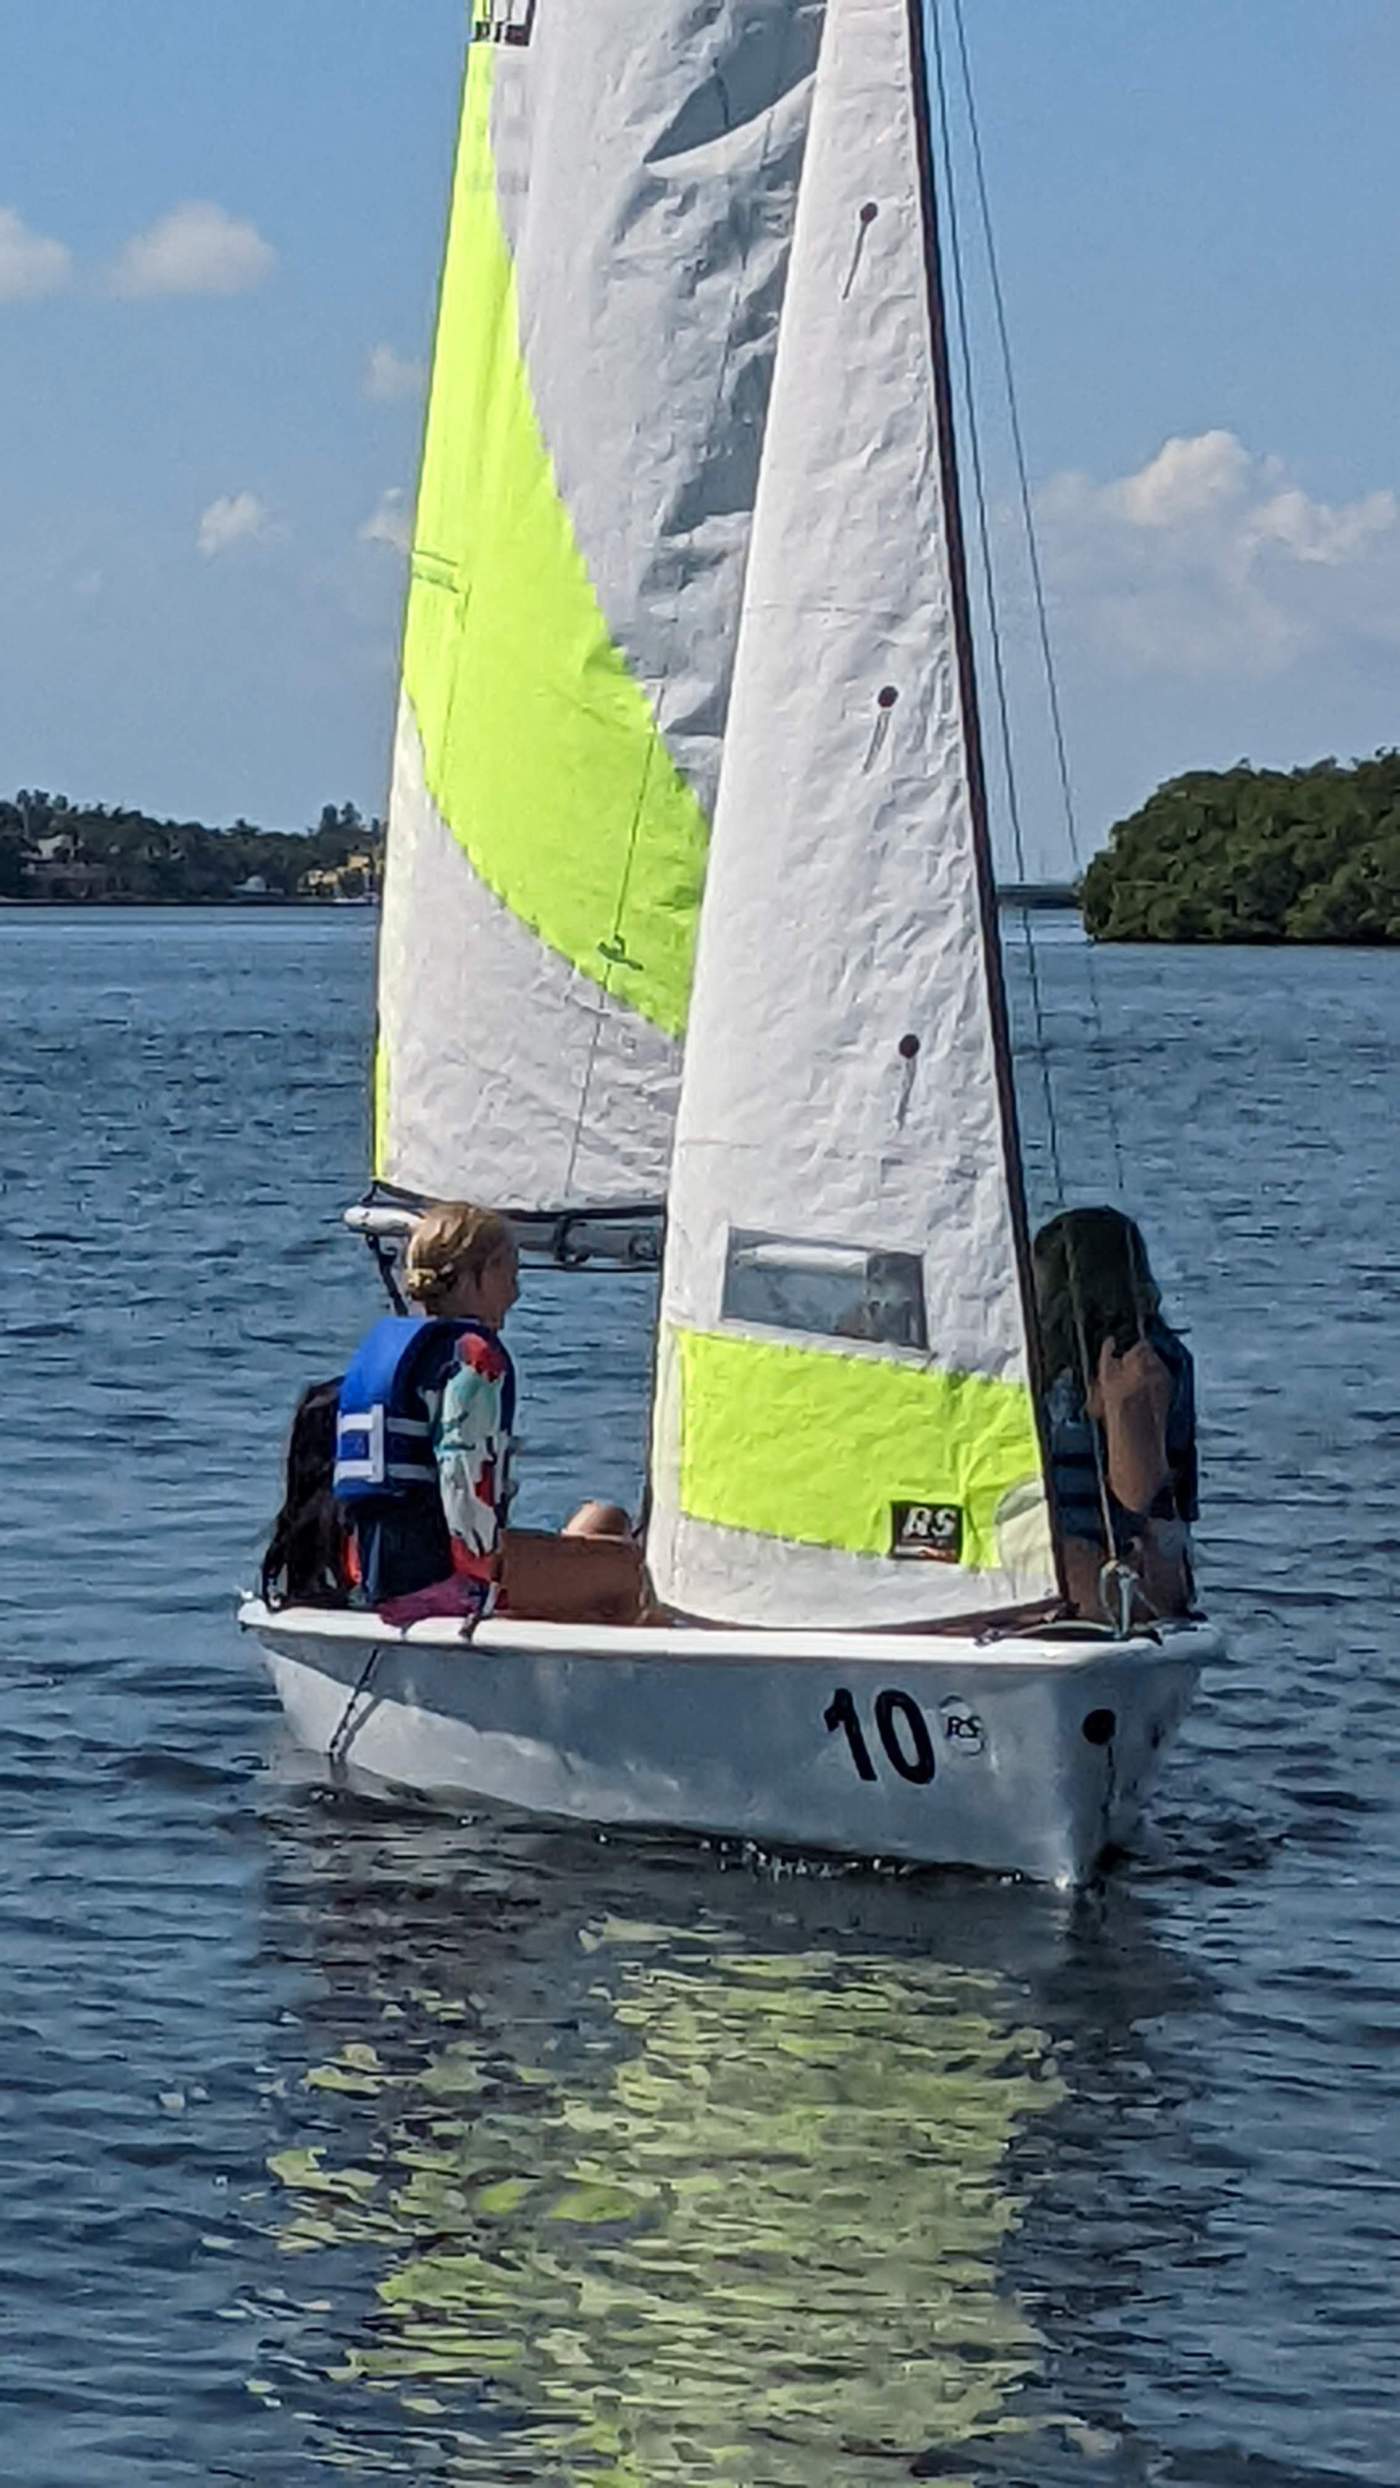 Children sailing a boat